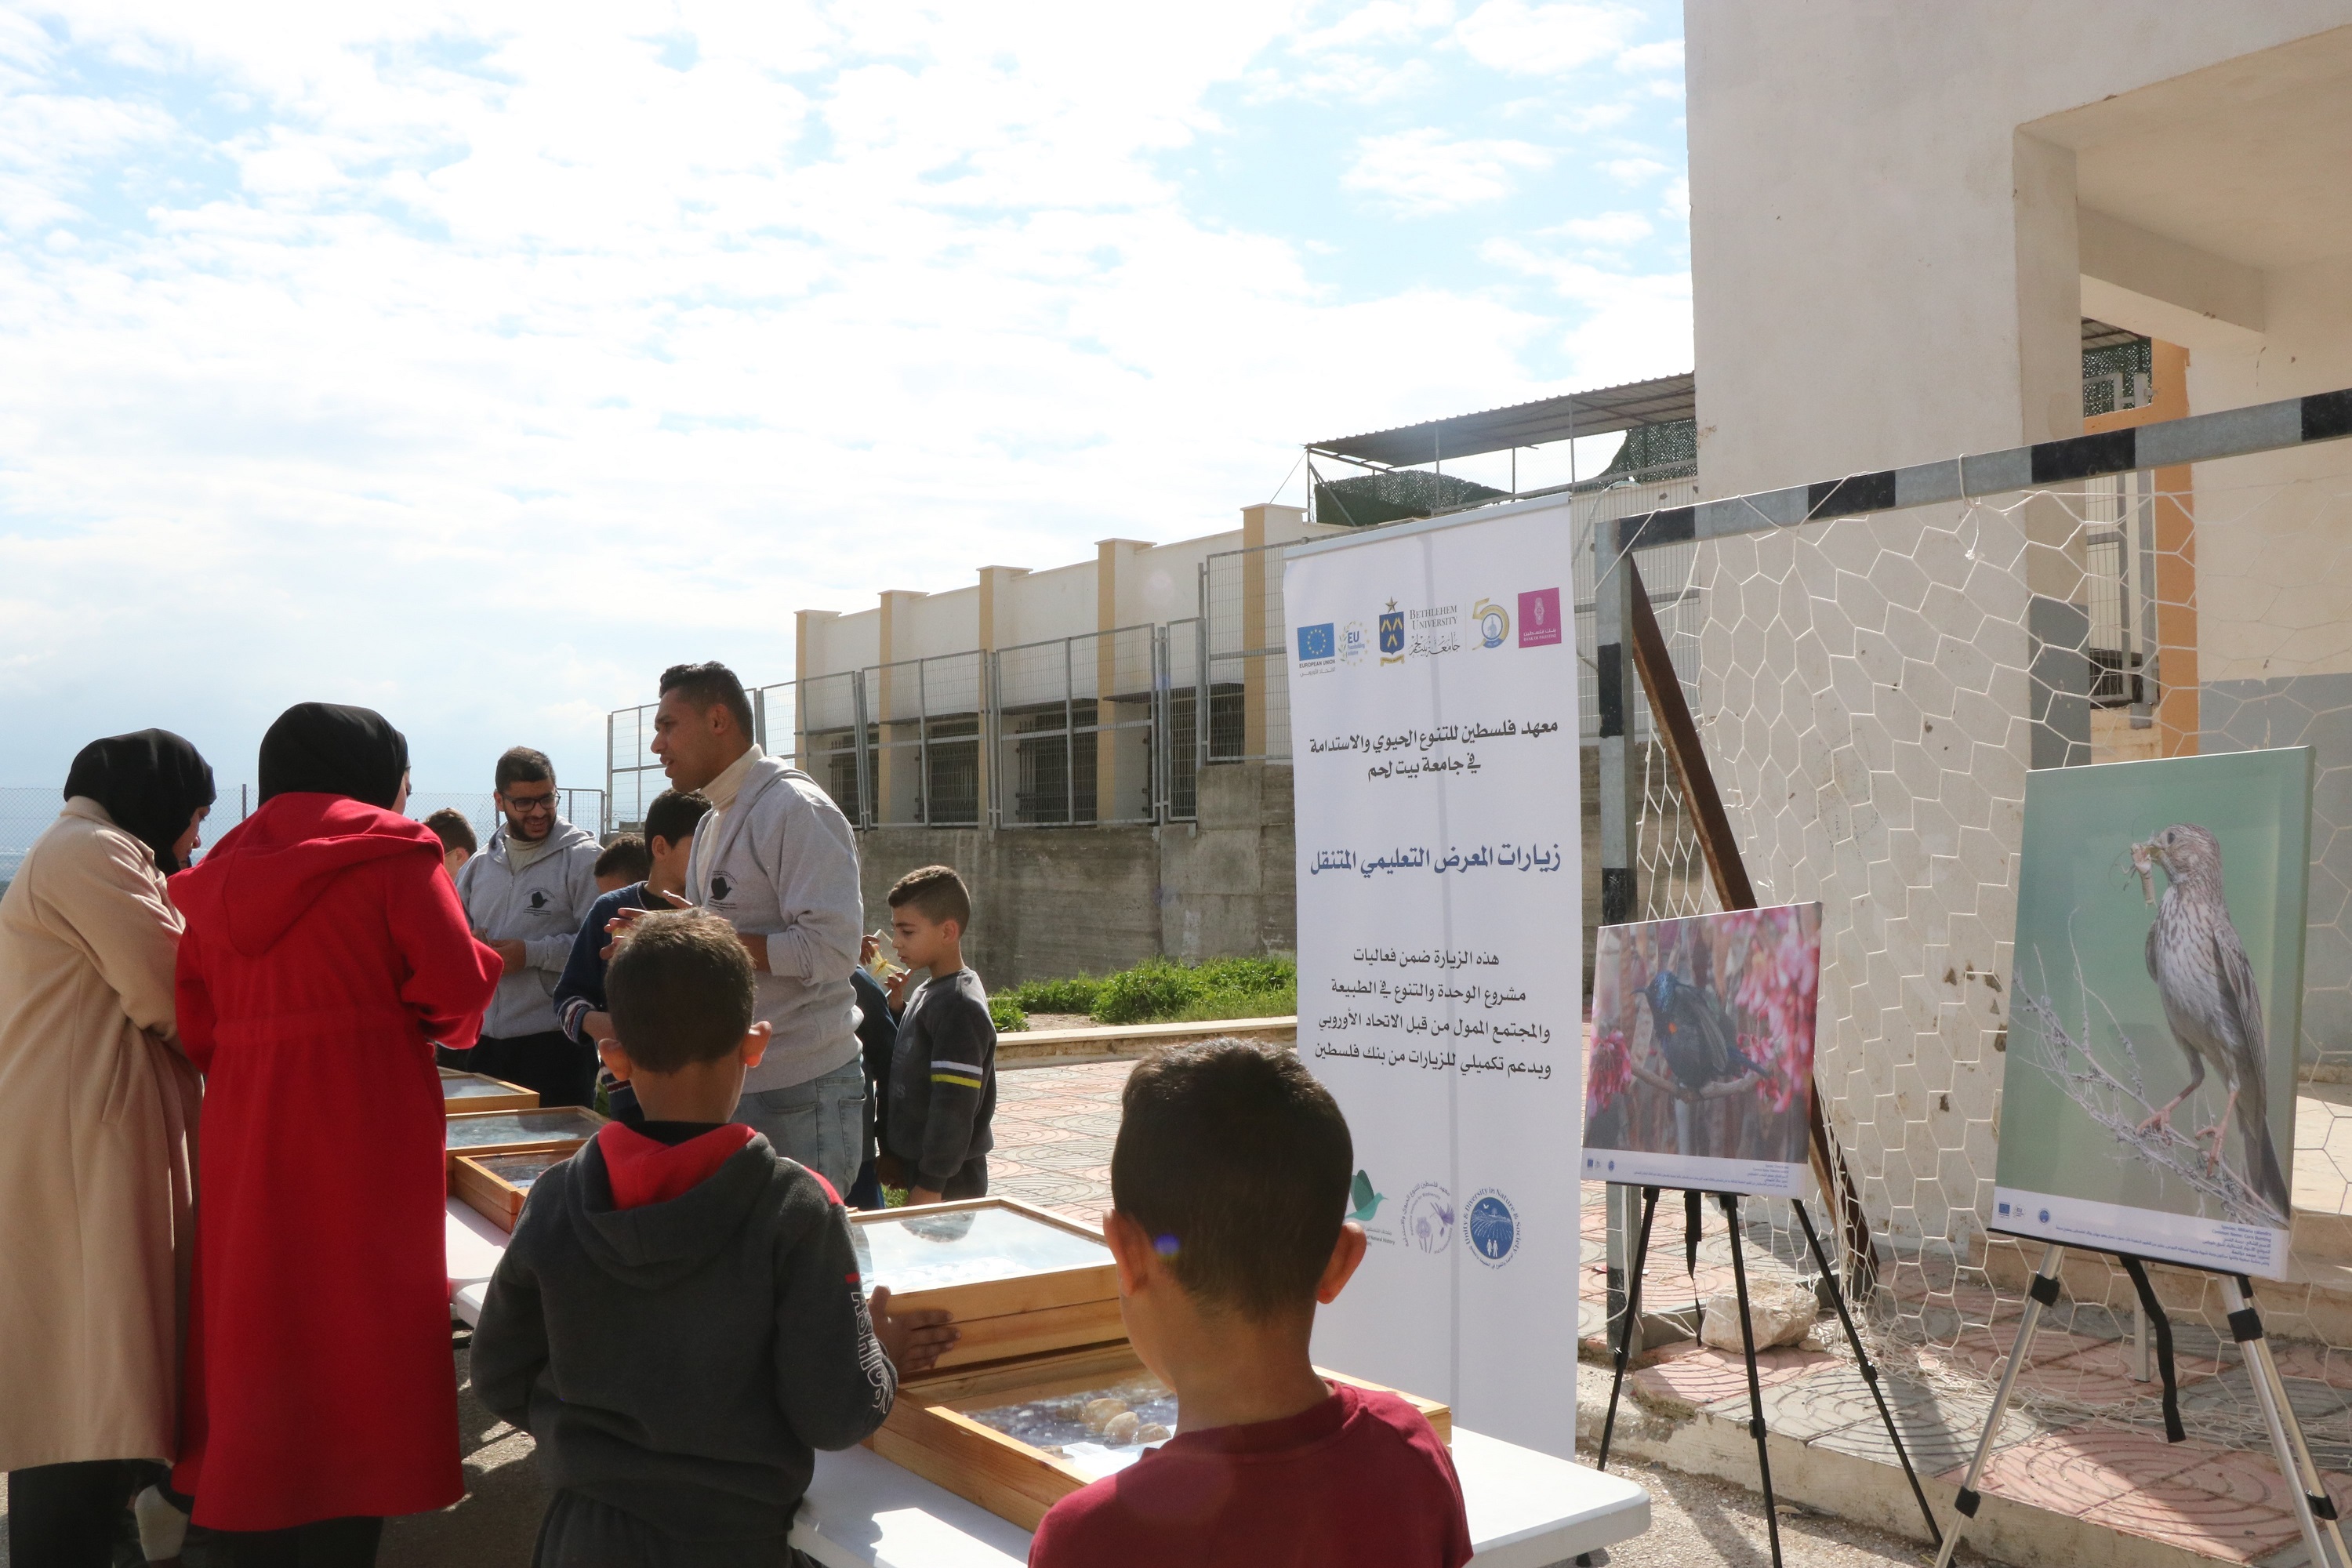 بنك فلسطين يساهم في دعم تنفيذ زيارات تثقيفية للمدارس من خلال المتحف التعليمي المتنقل